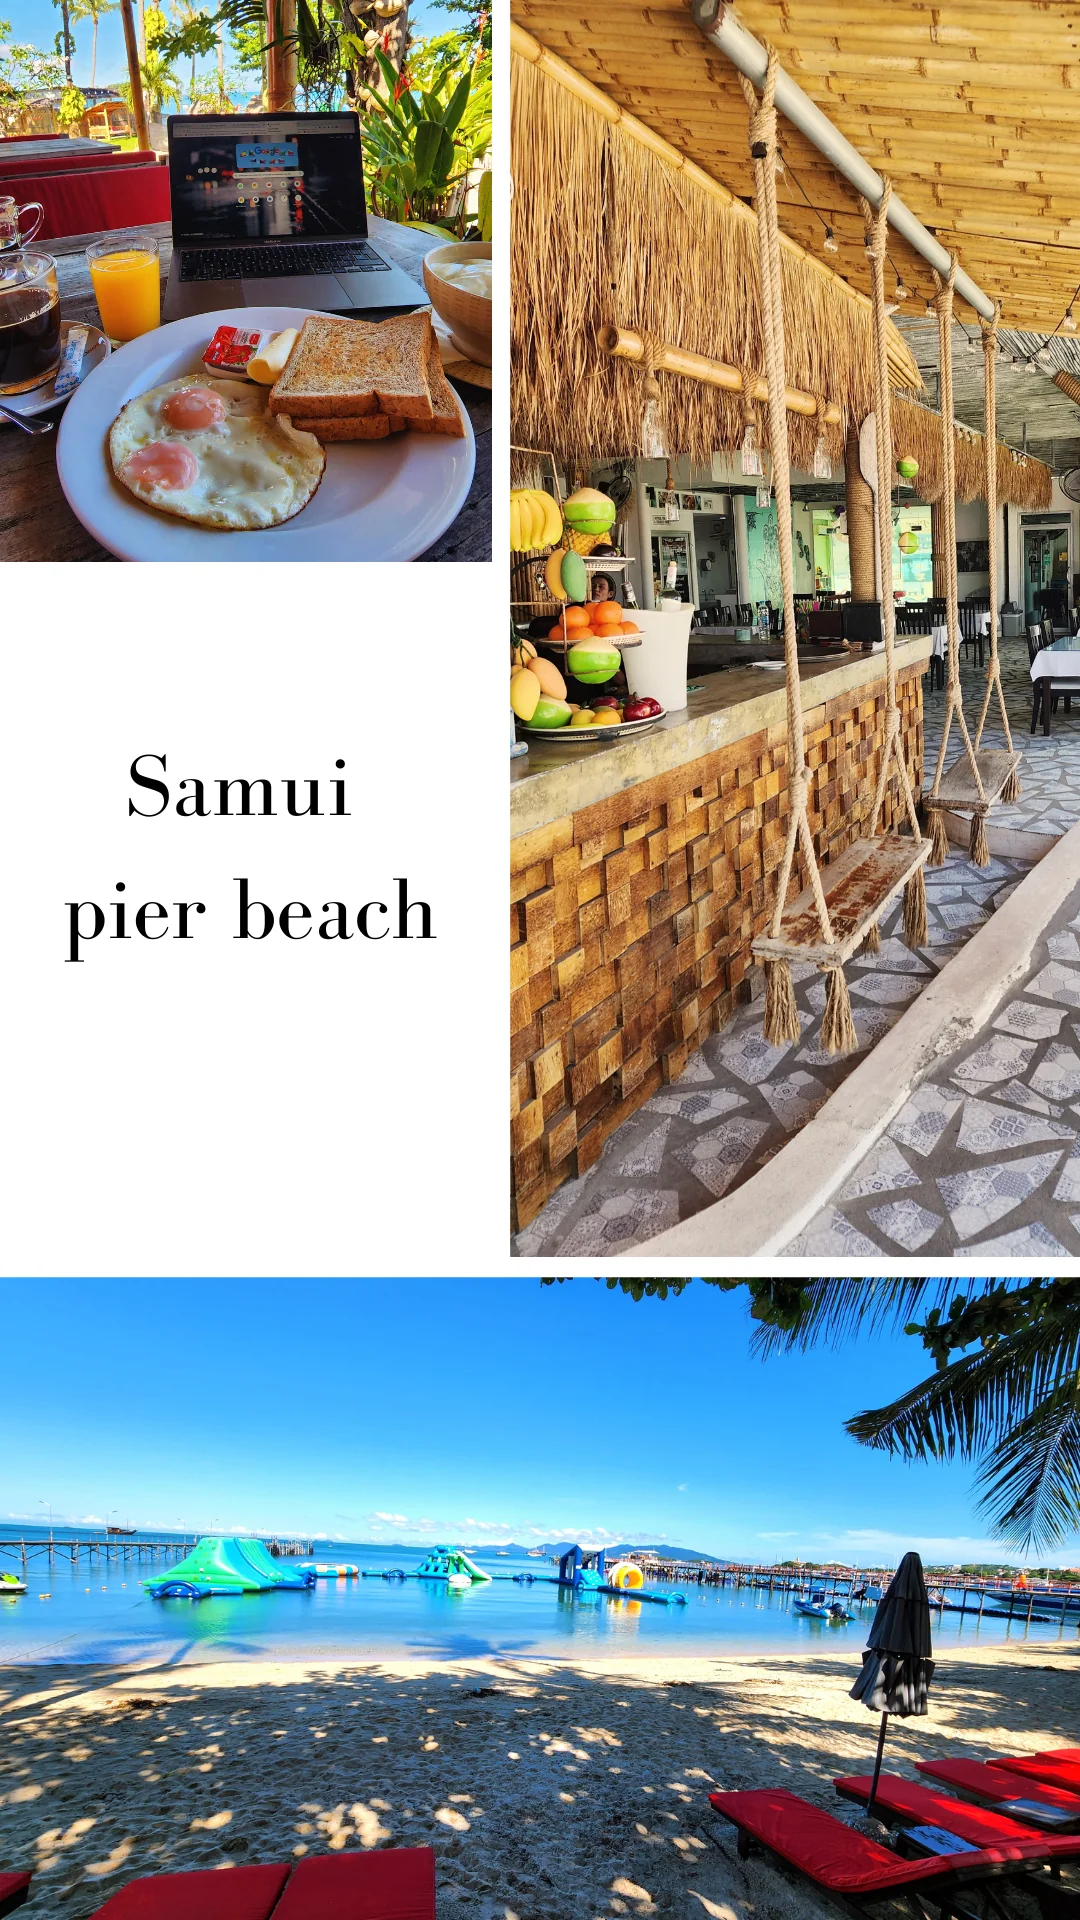 repas-samui-pier-beach-koh-samui